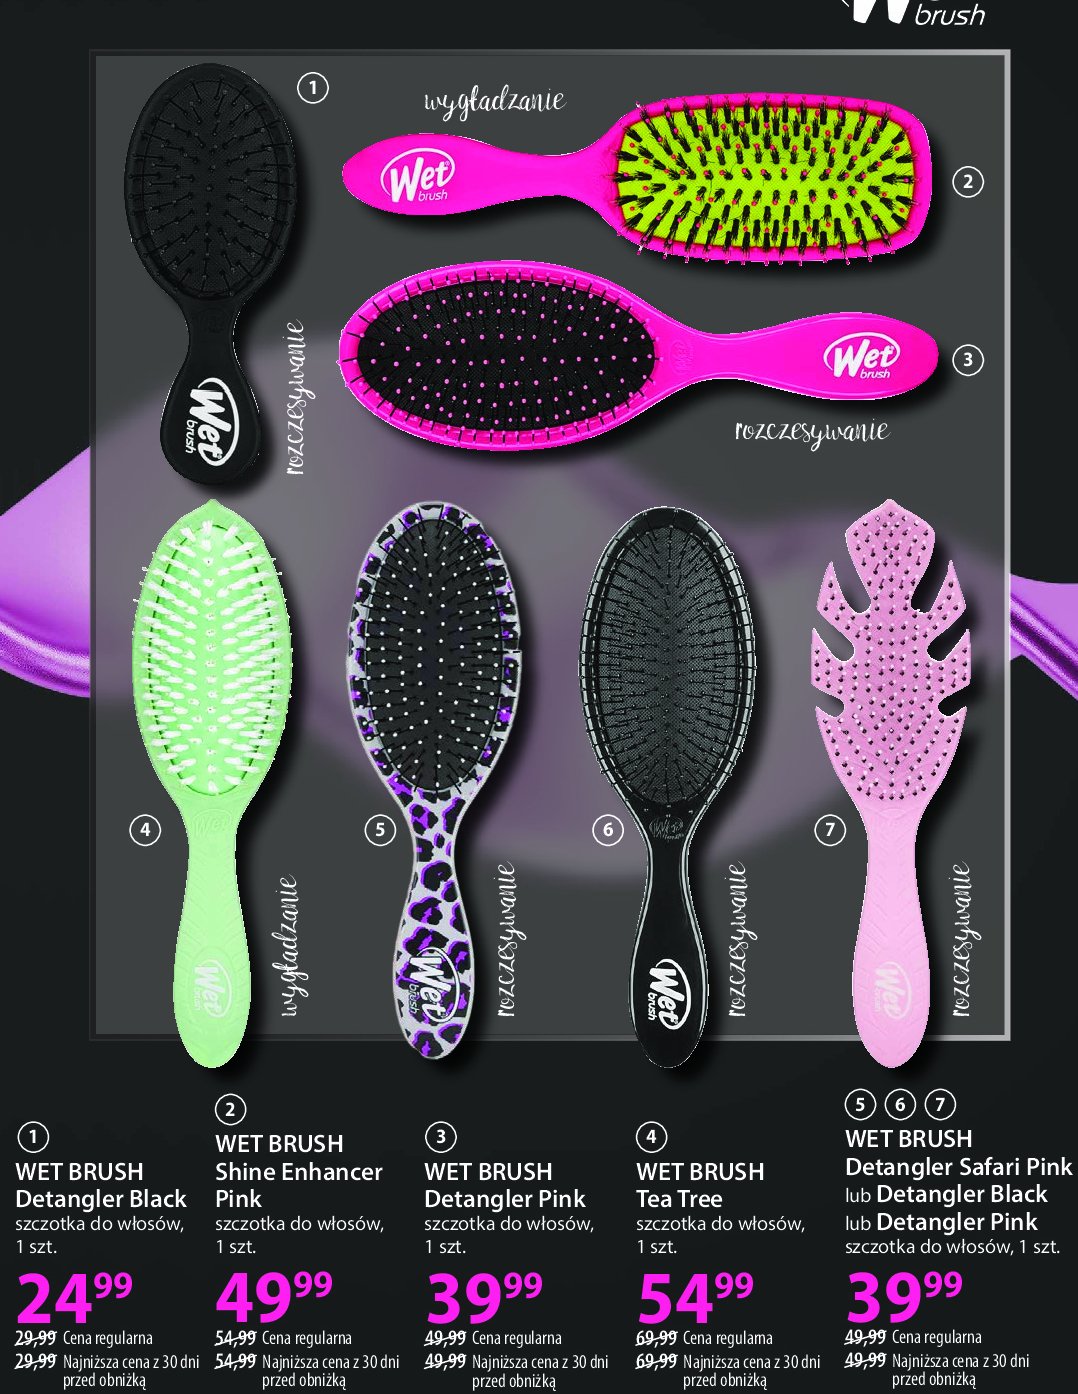 Szczotka do włosów shine enhancer pink Wet brush promocja